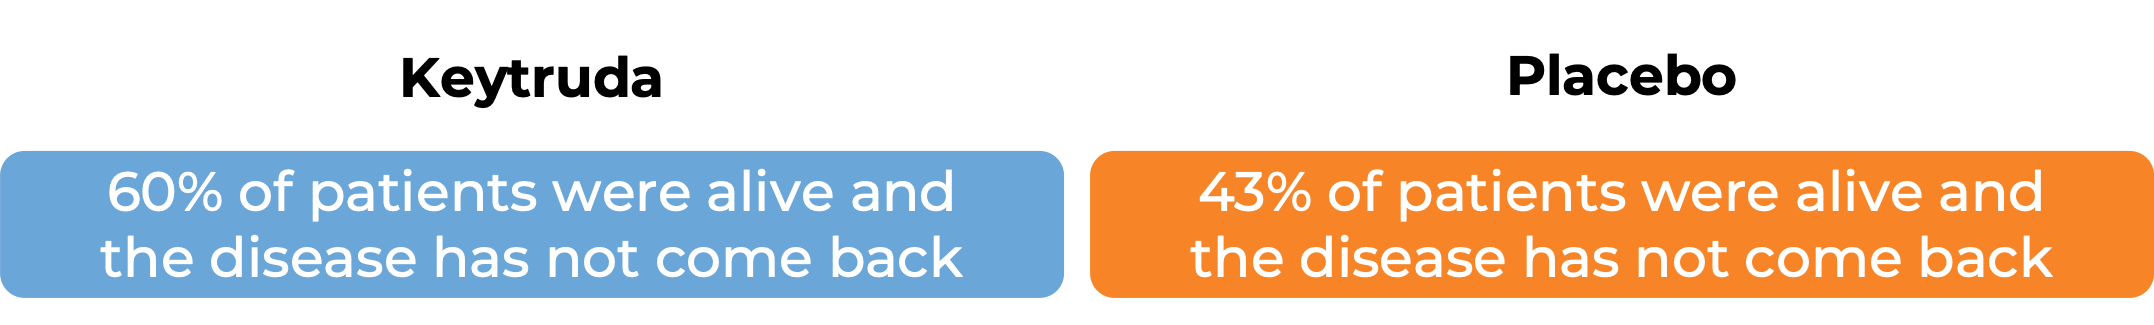 Results for Keytruda vs placebo (diagram)